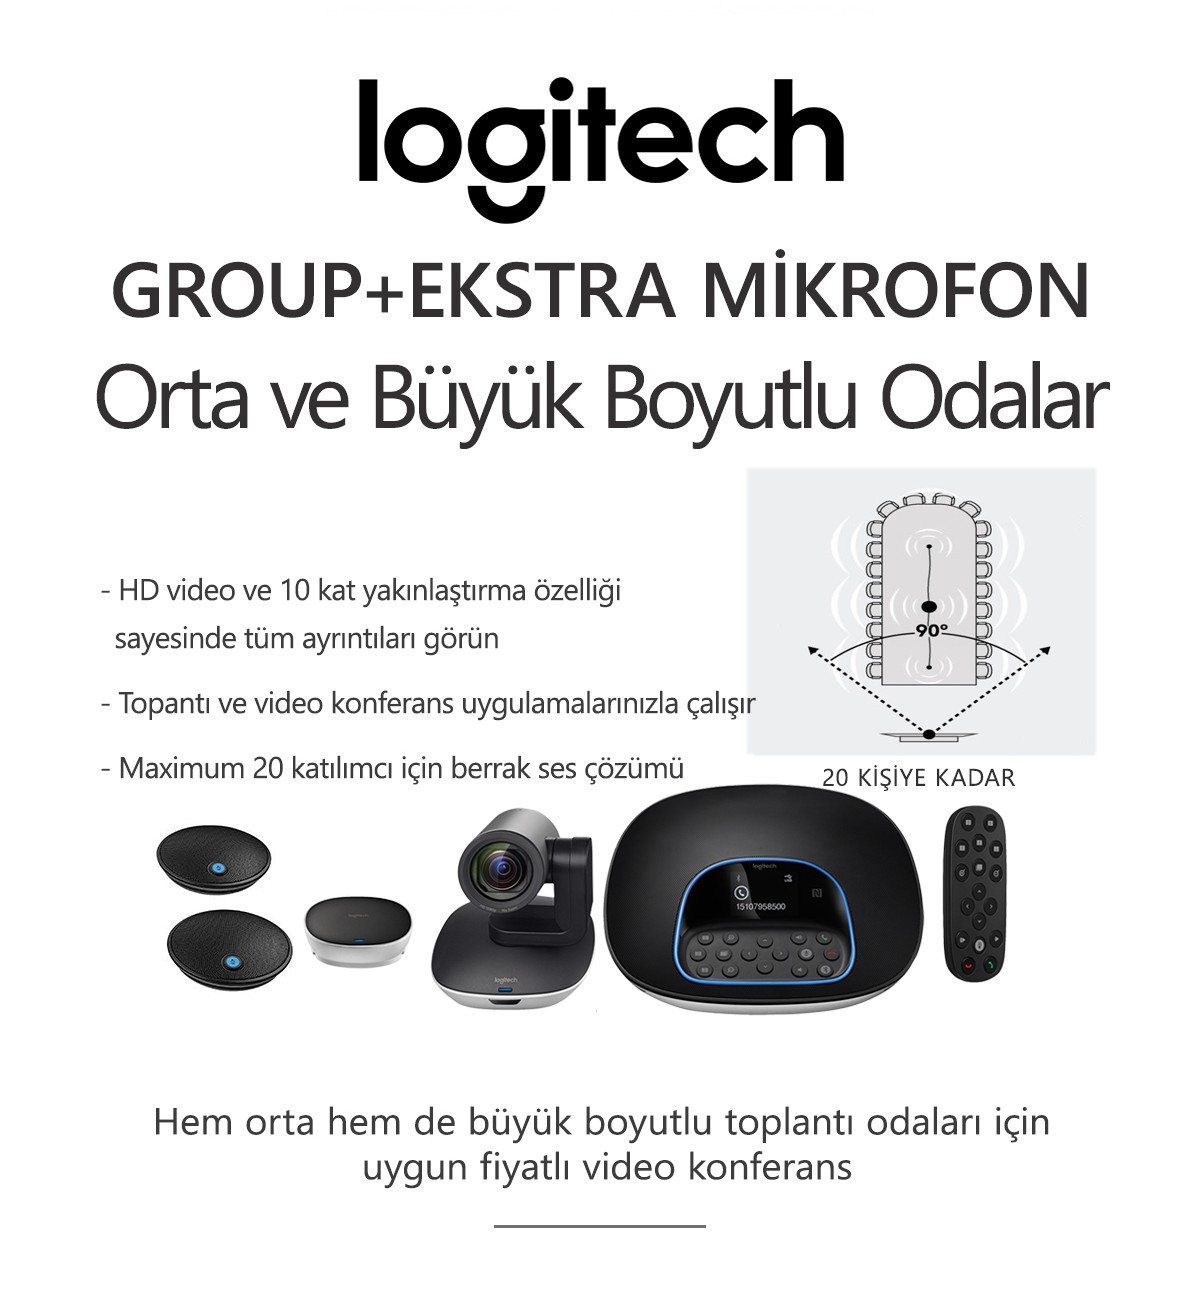 Logitech GROUP + EKSTRA MİKROFON Konferans Sistemi